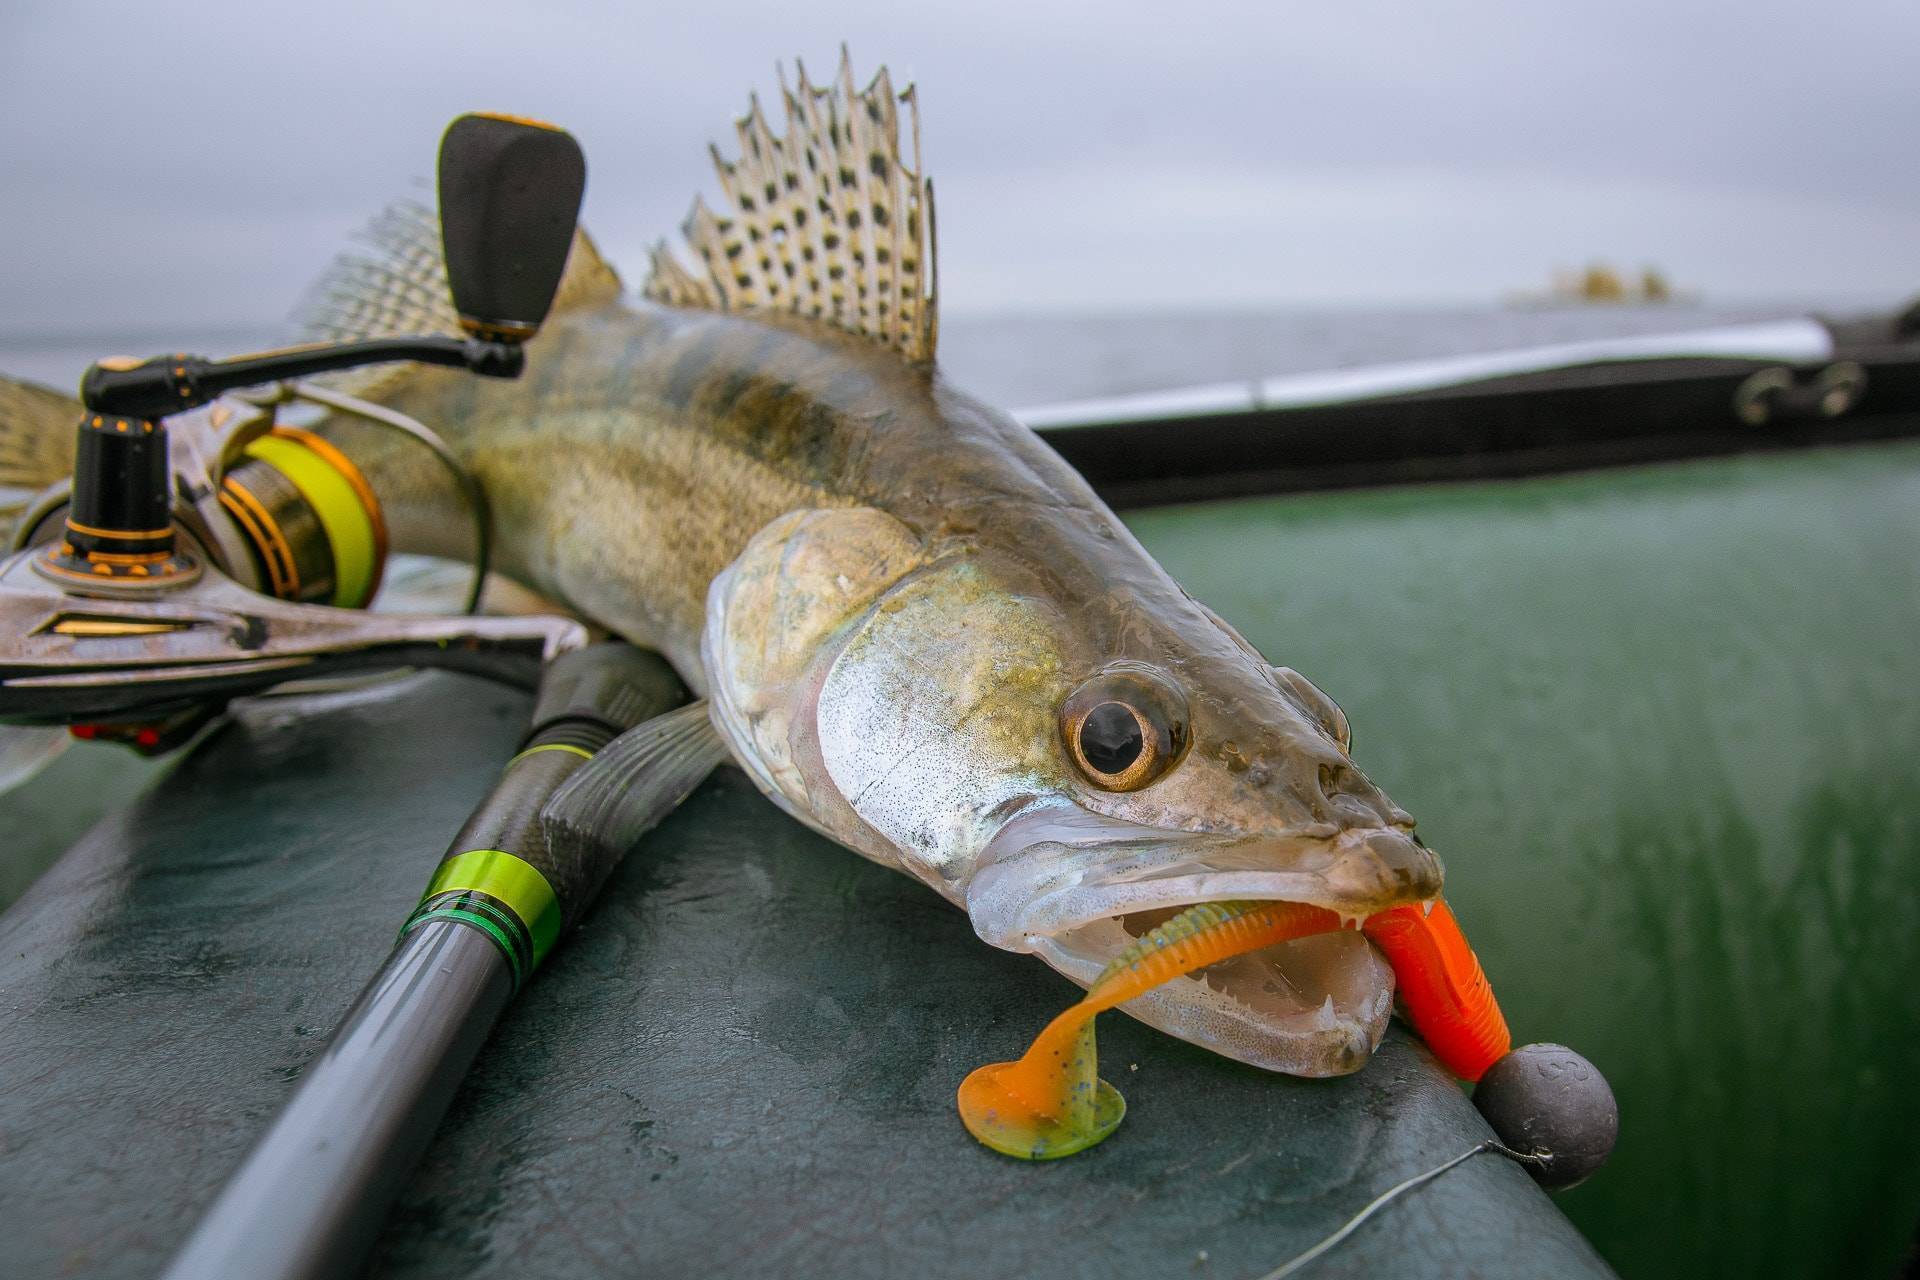 Рыбалка на спиннинг | спиннинг клаб - советы для начинающих рыбаков
ловля судака ночью на спиннинг: секреты и тонкости